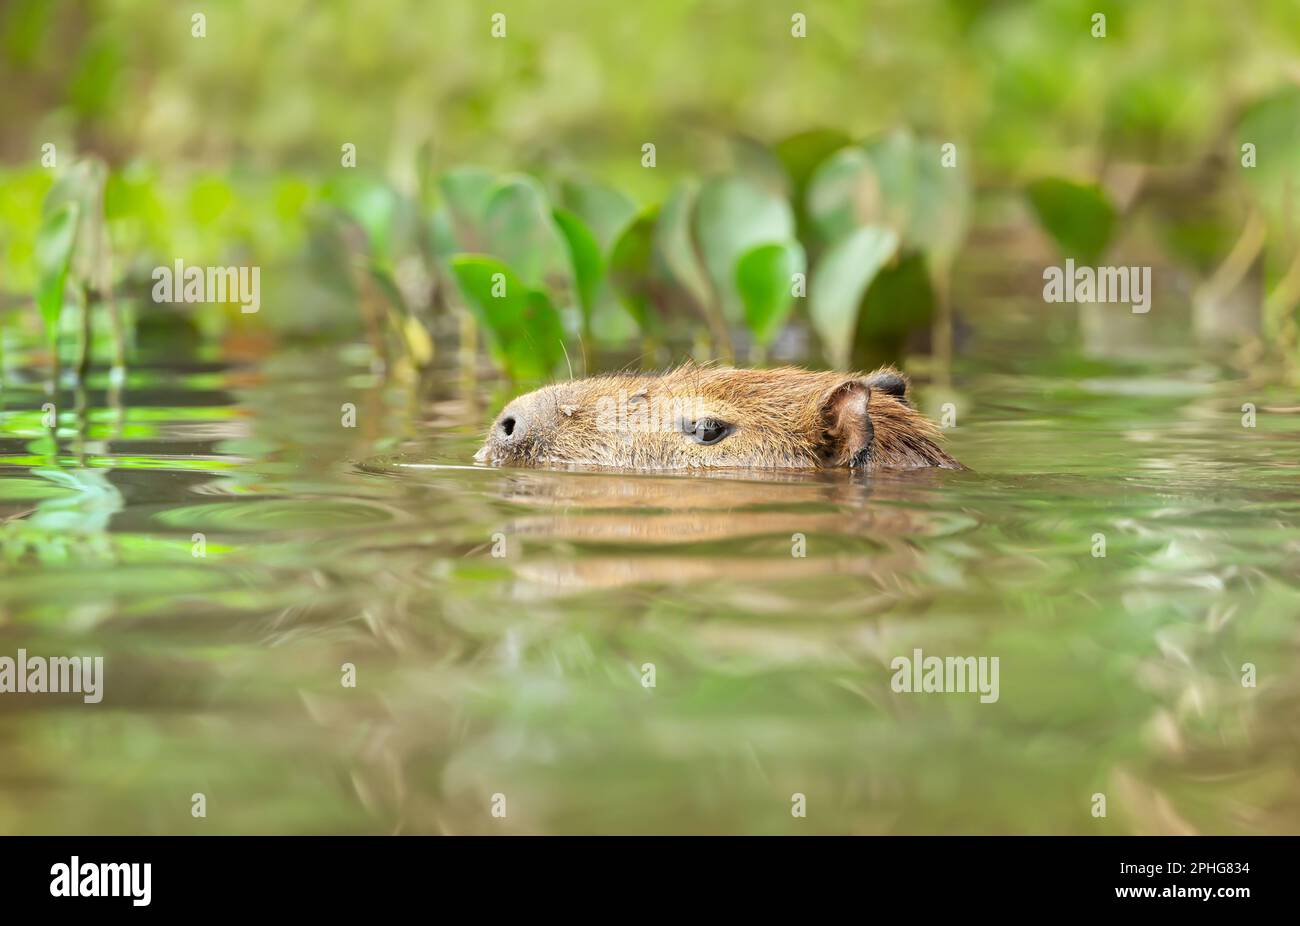 Nage de capybara dans une rivière, Pantanal du Sud, Brésil. Banque D'Images